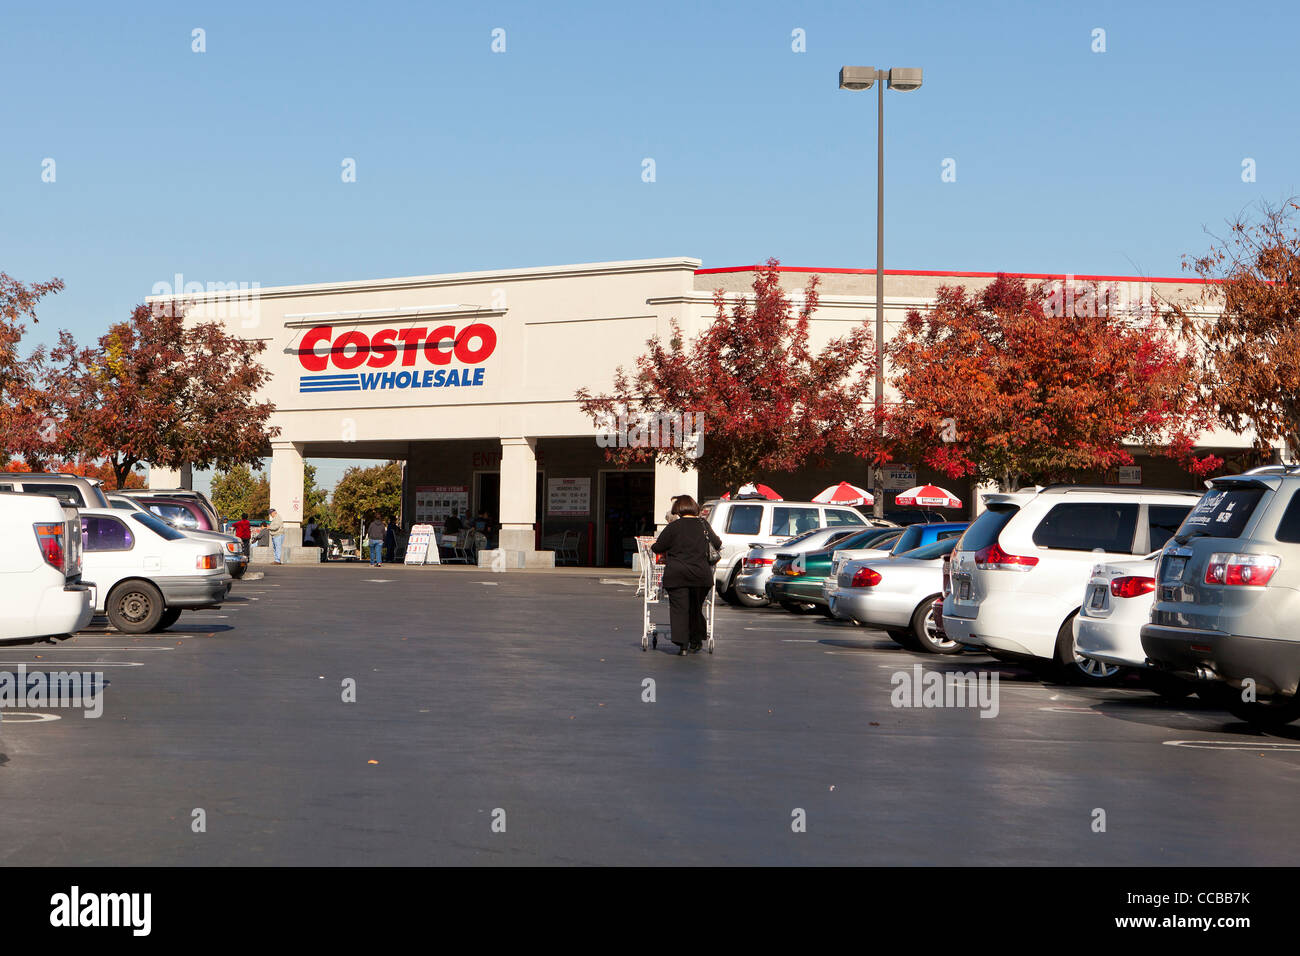 Costco storefront Stock Photo